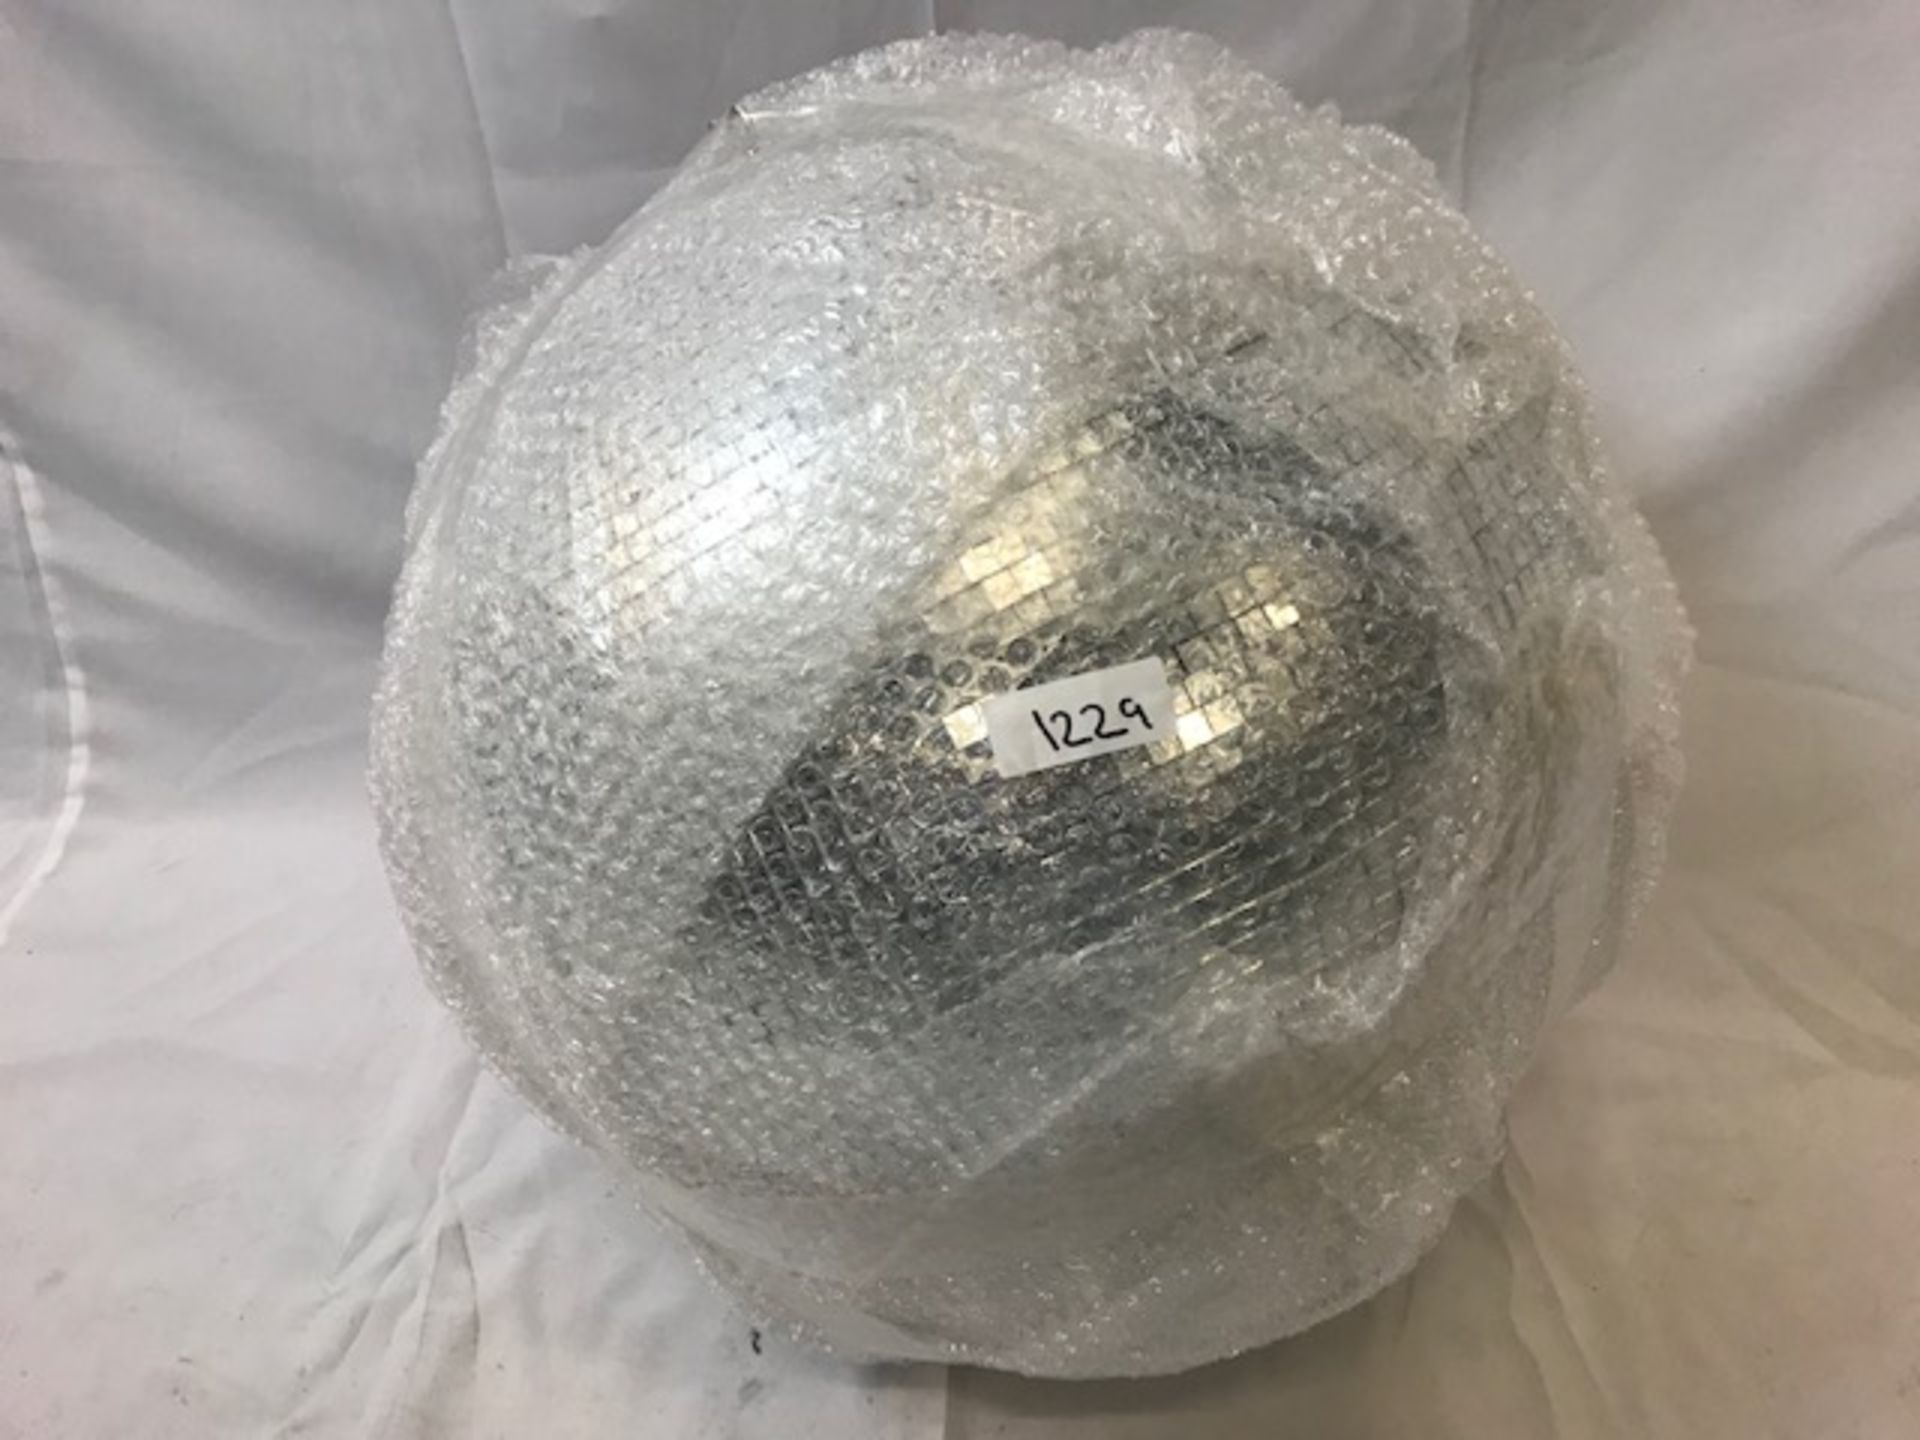 1 x 50cm Diameter disco ball - Ref: 1229 - CL581 - Location: Altrincham WA14